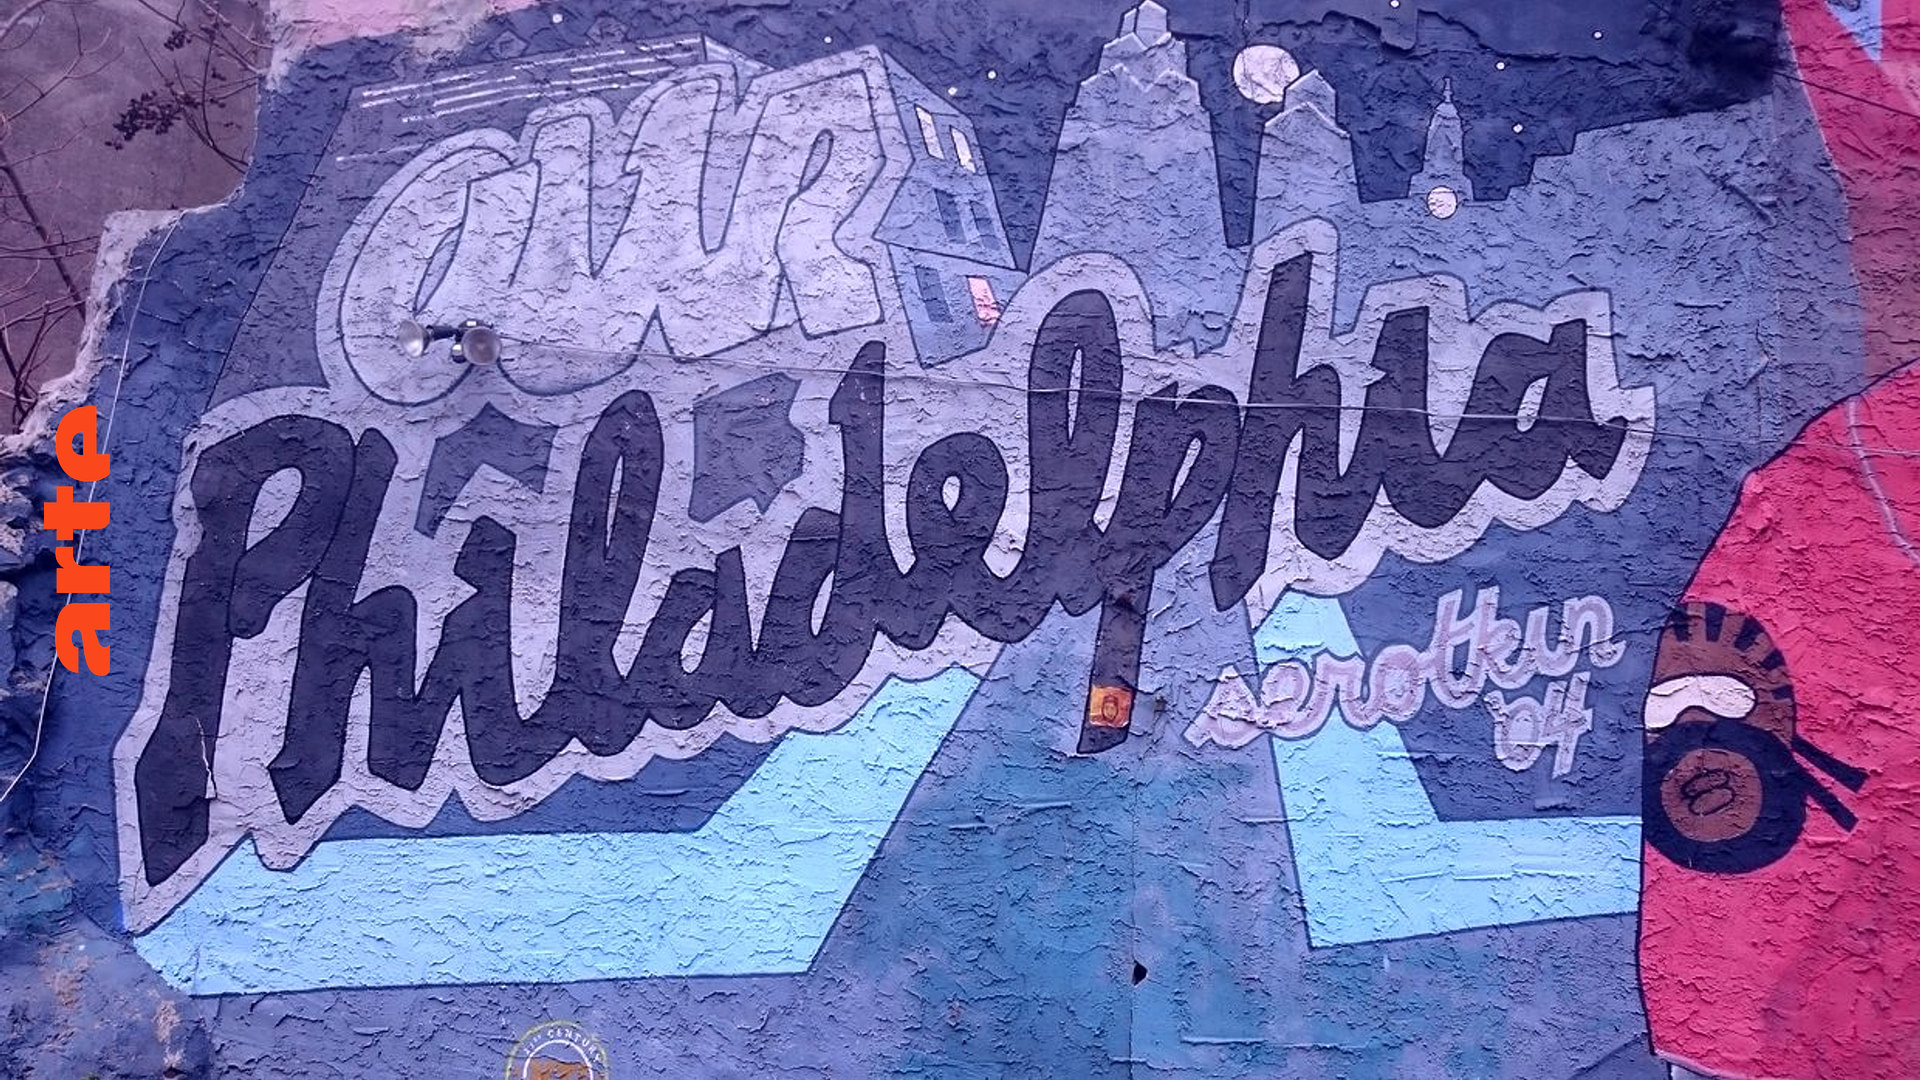 Jamie Graham über die Murals in Philadelphia